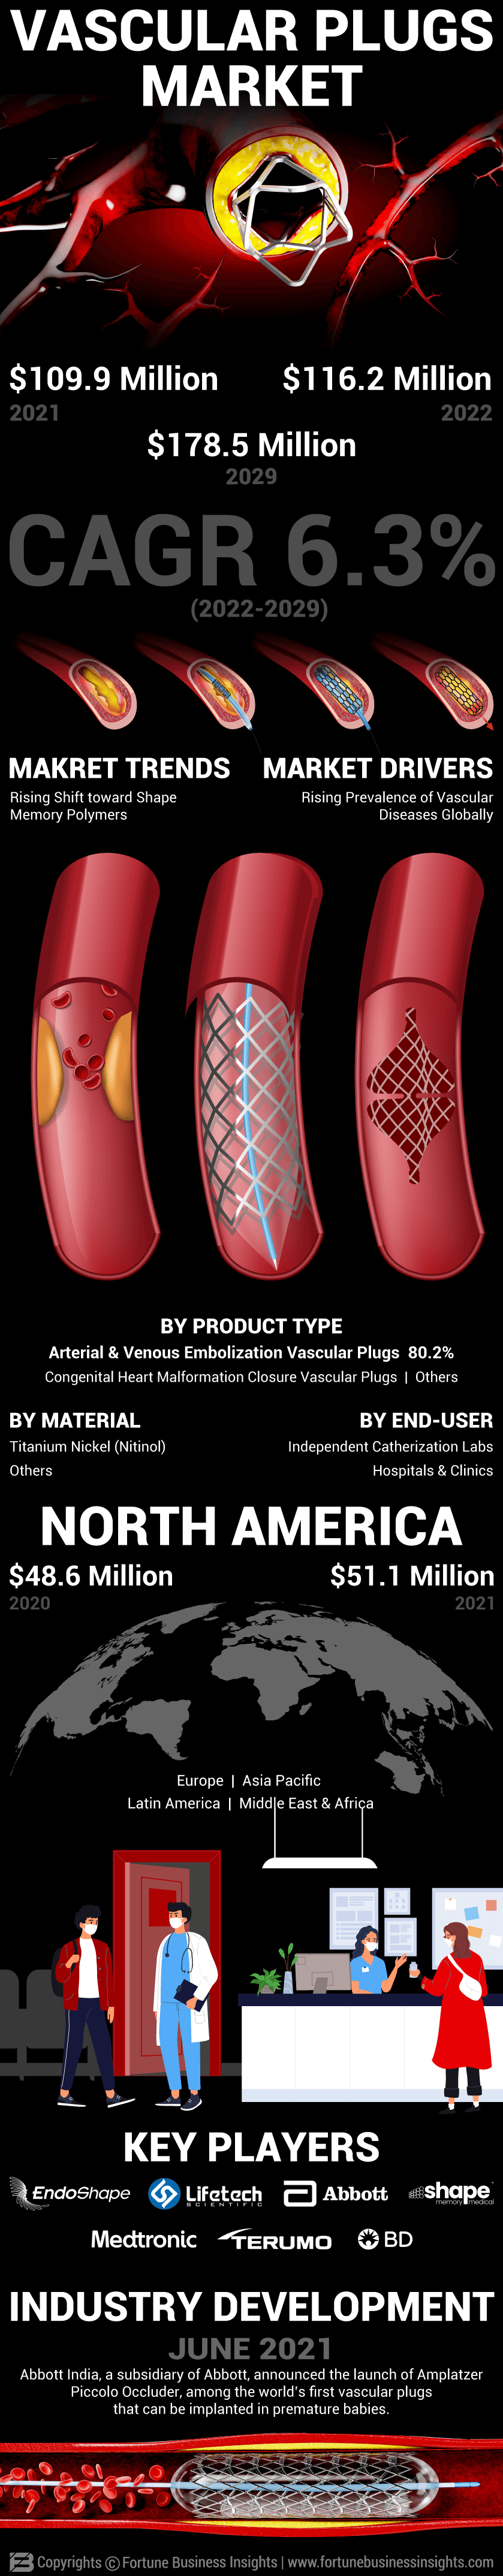 Vascular Plugs Market